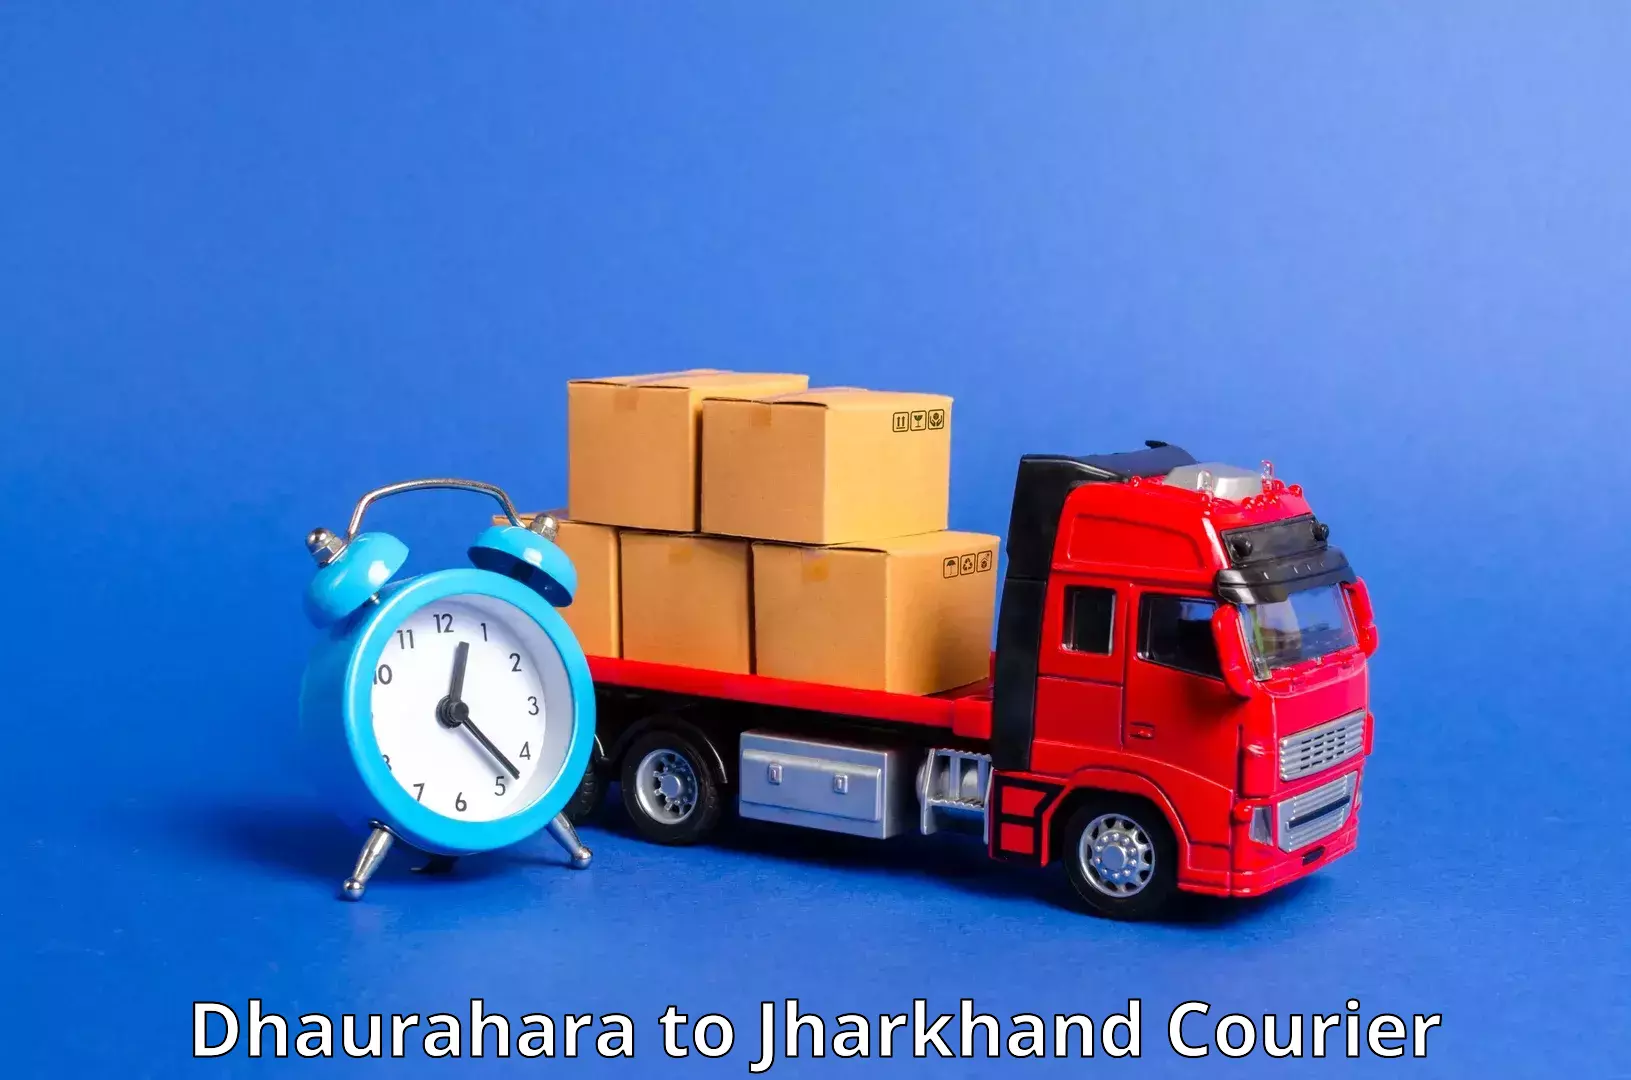 Flexible shipping options Dhaurahara to Godabar Chatra